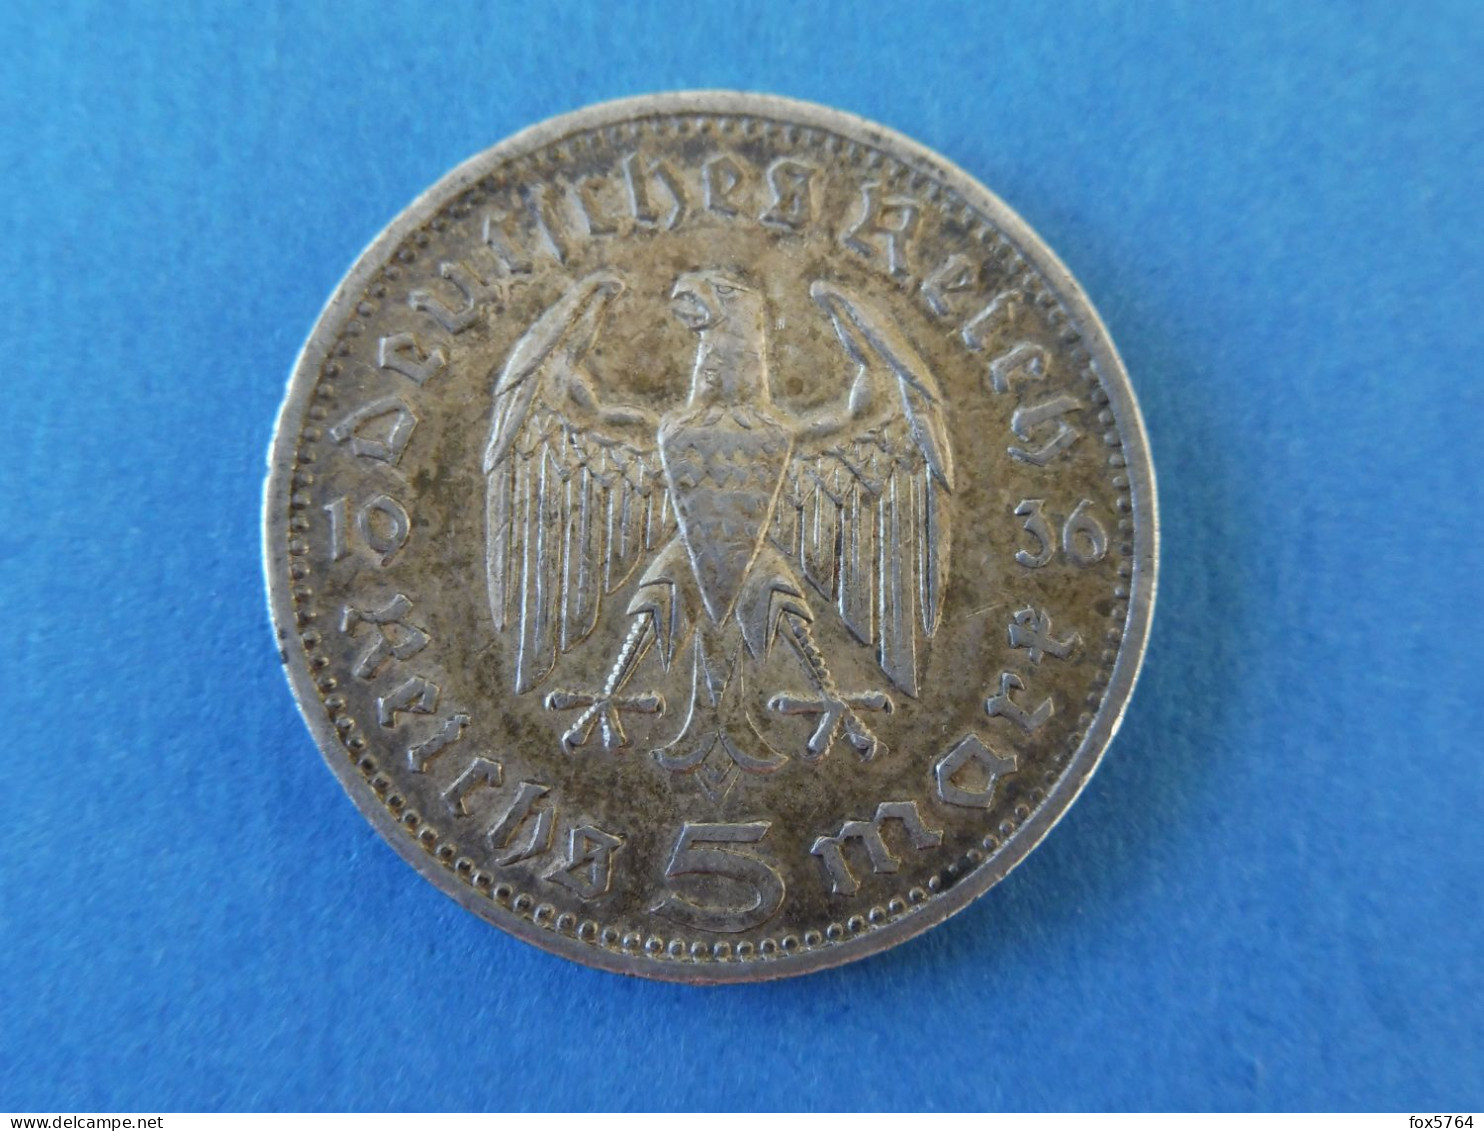 MONNAIE ARGENT / 5 MARK EMPIRE ALLEMAGNE / HINDENBURG 1934 - 5 Reichsmark